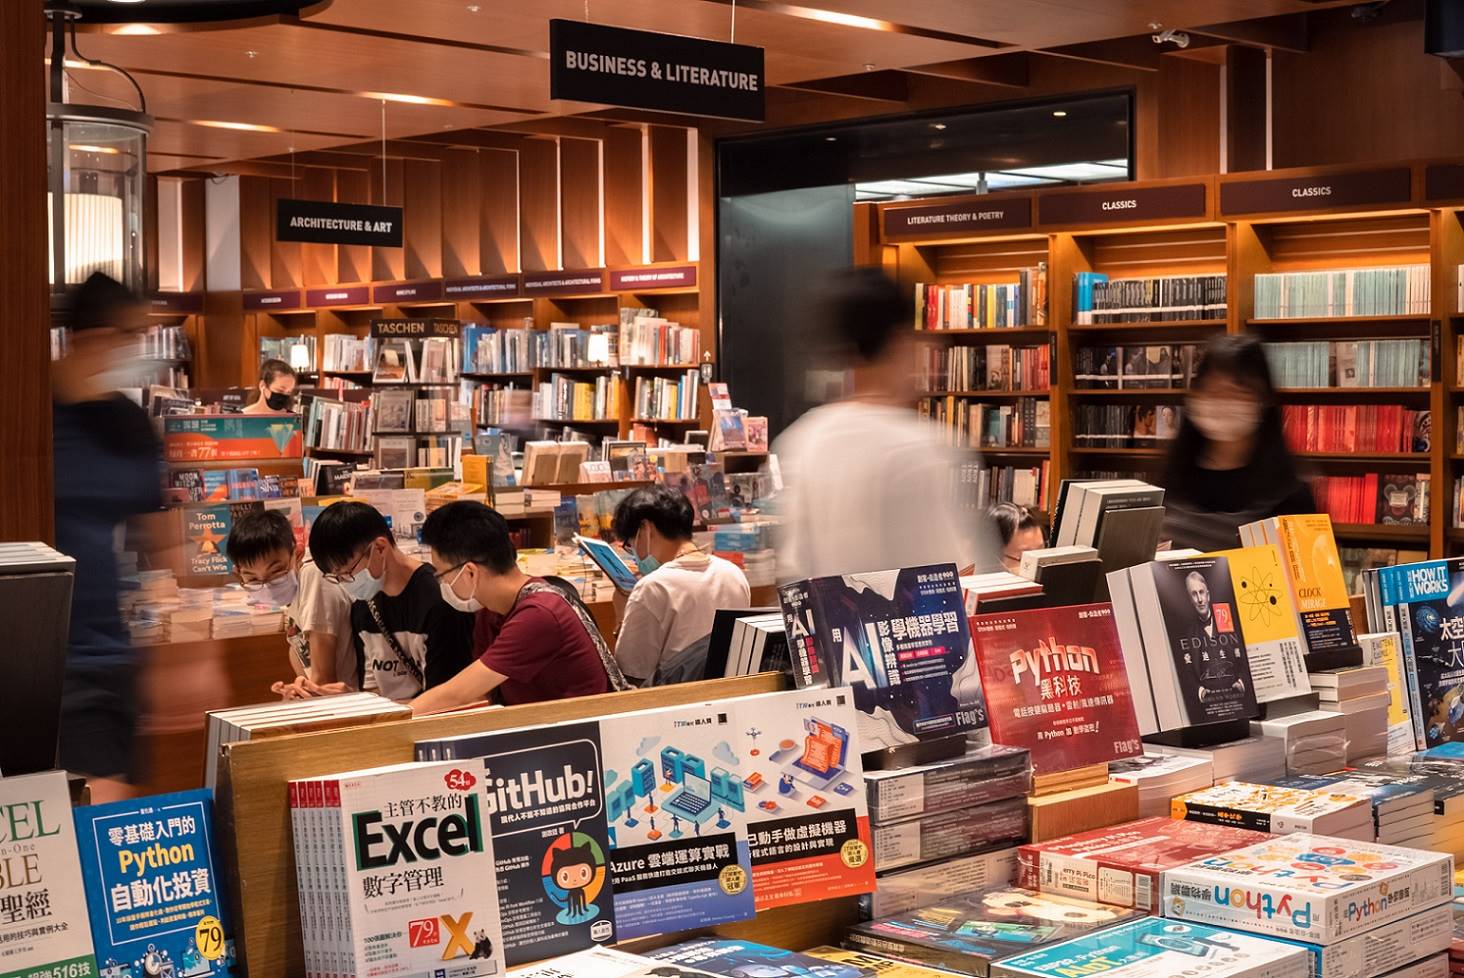 誠品觀察年輕族群在實體書店購書比例「越夜越高」